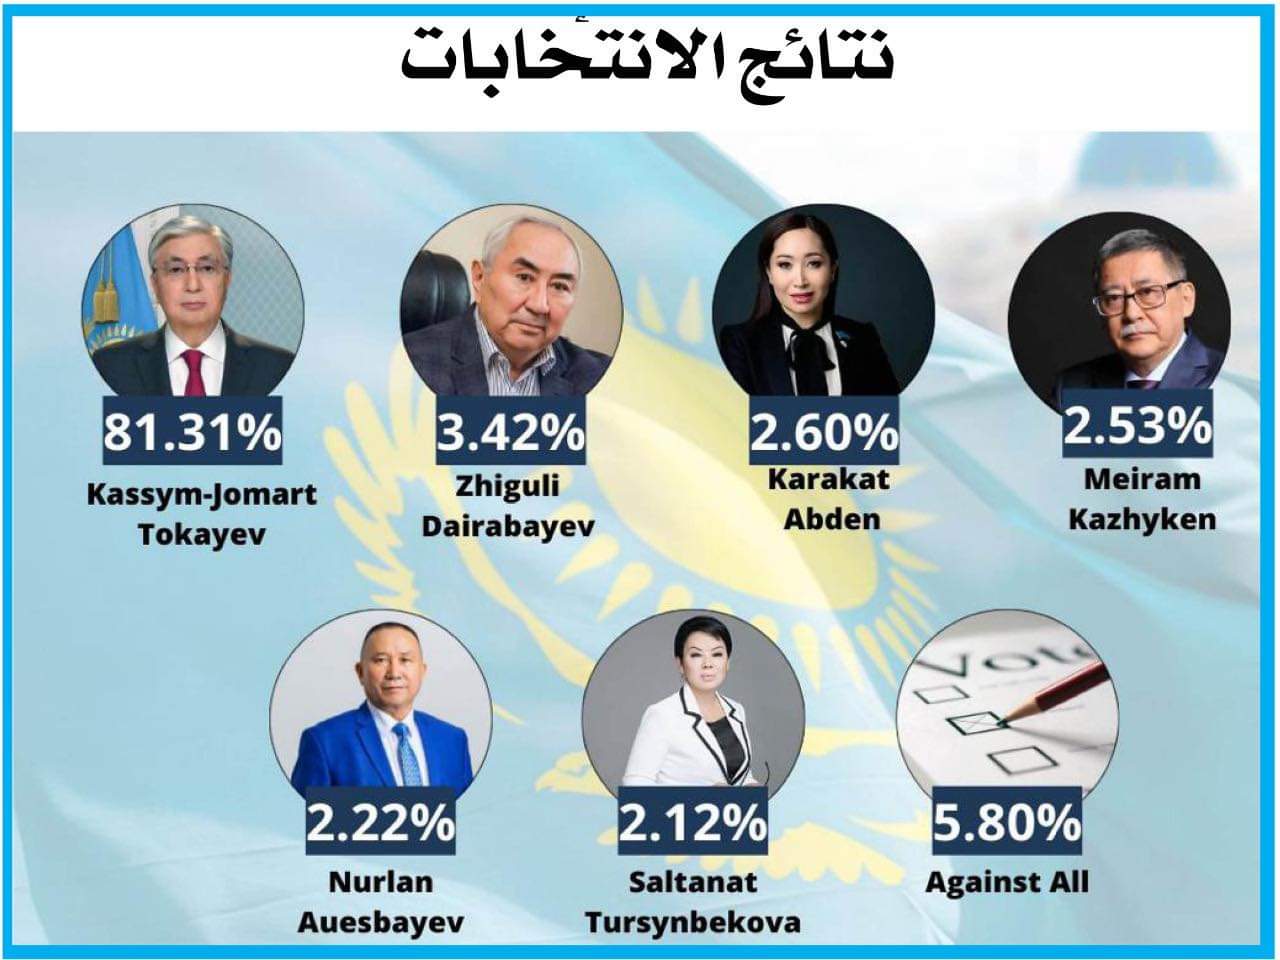 حصد 81.31% من أصوات الناخبين.. توكاييف يحقق فوزا ساحقا وإعادة انتخابه رئيسا لكازاخستان